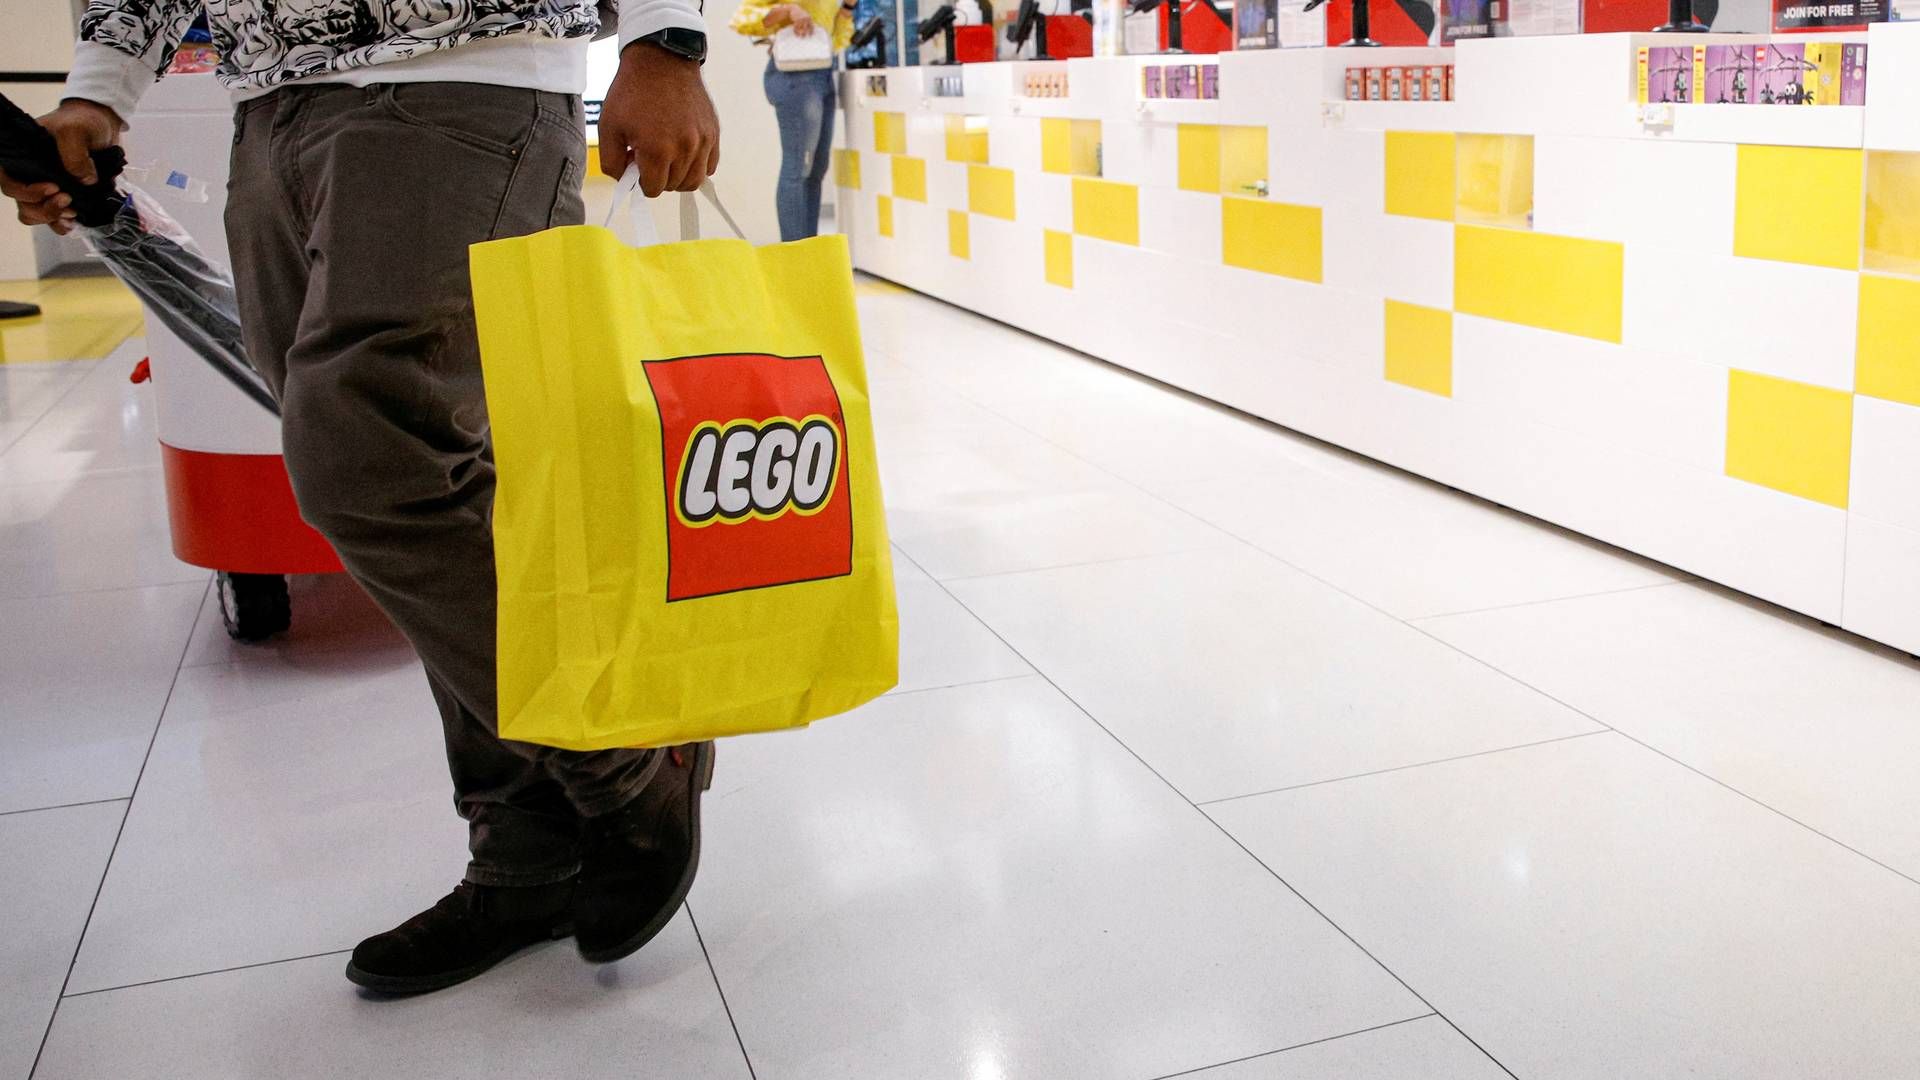 Lego vil holde ekstra øje med sine partnere i detailhandlen efter Rusland har gjort det lovligt at importere legoklodser uden legetøjskoncernens tilladelse. | Foto: BRENDAN MCDERMID/REUTERS / X90143